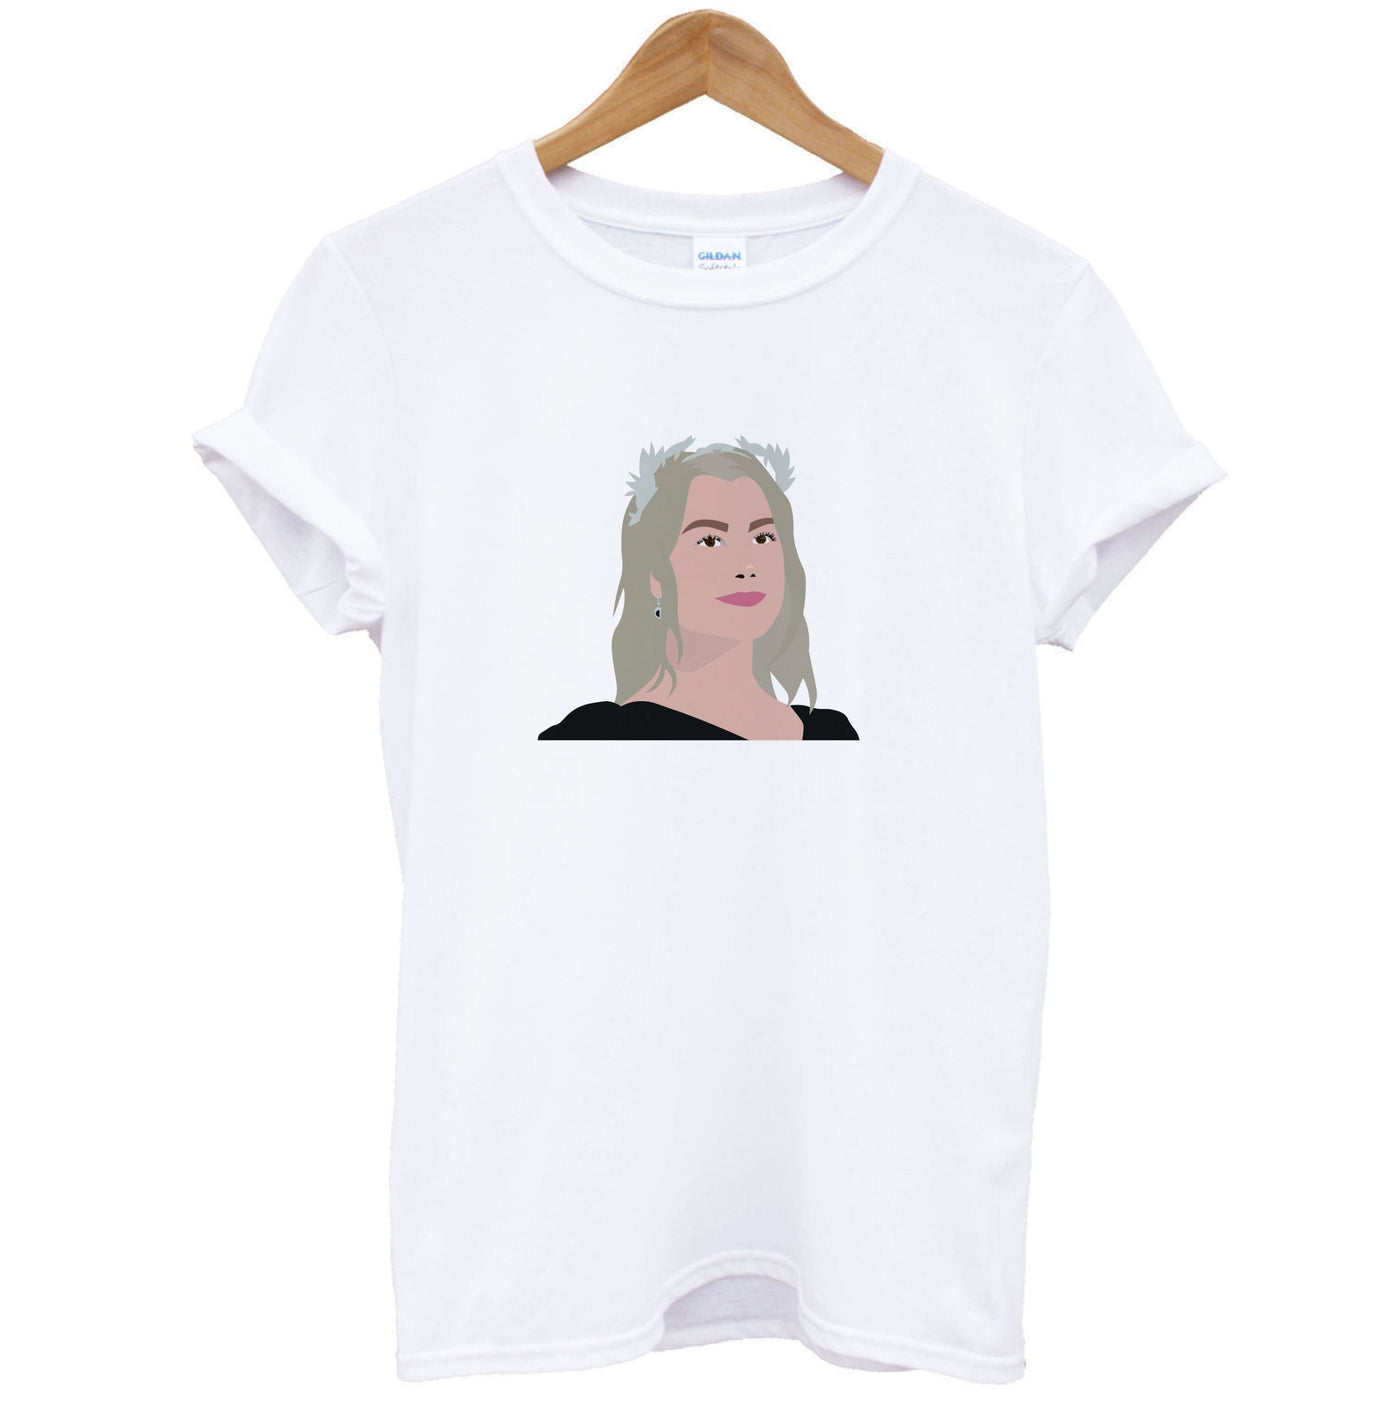 Tiara - Phoebe Bridgers T-Shirt